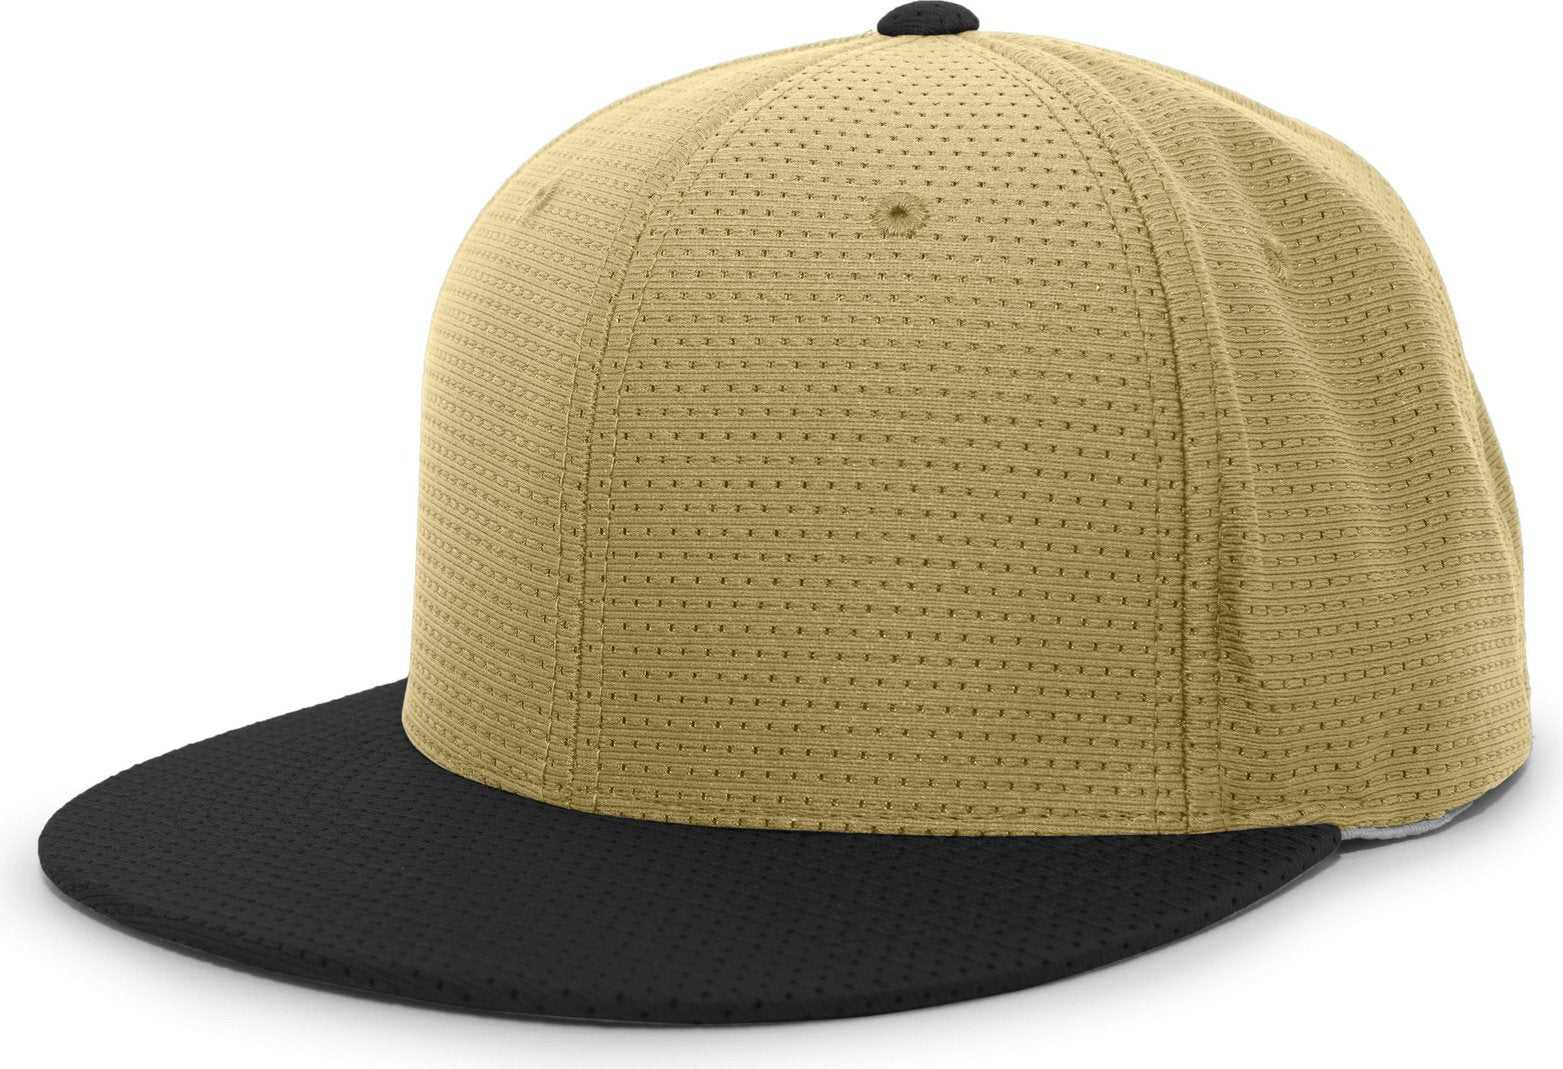 Pacific Headwear ES818 Air Jersey Performance Flexfit Cap - Vegas Gold Black - HIT a Double